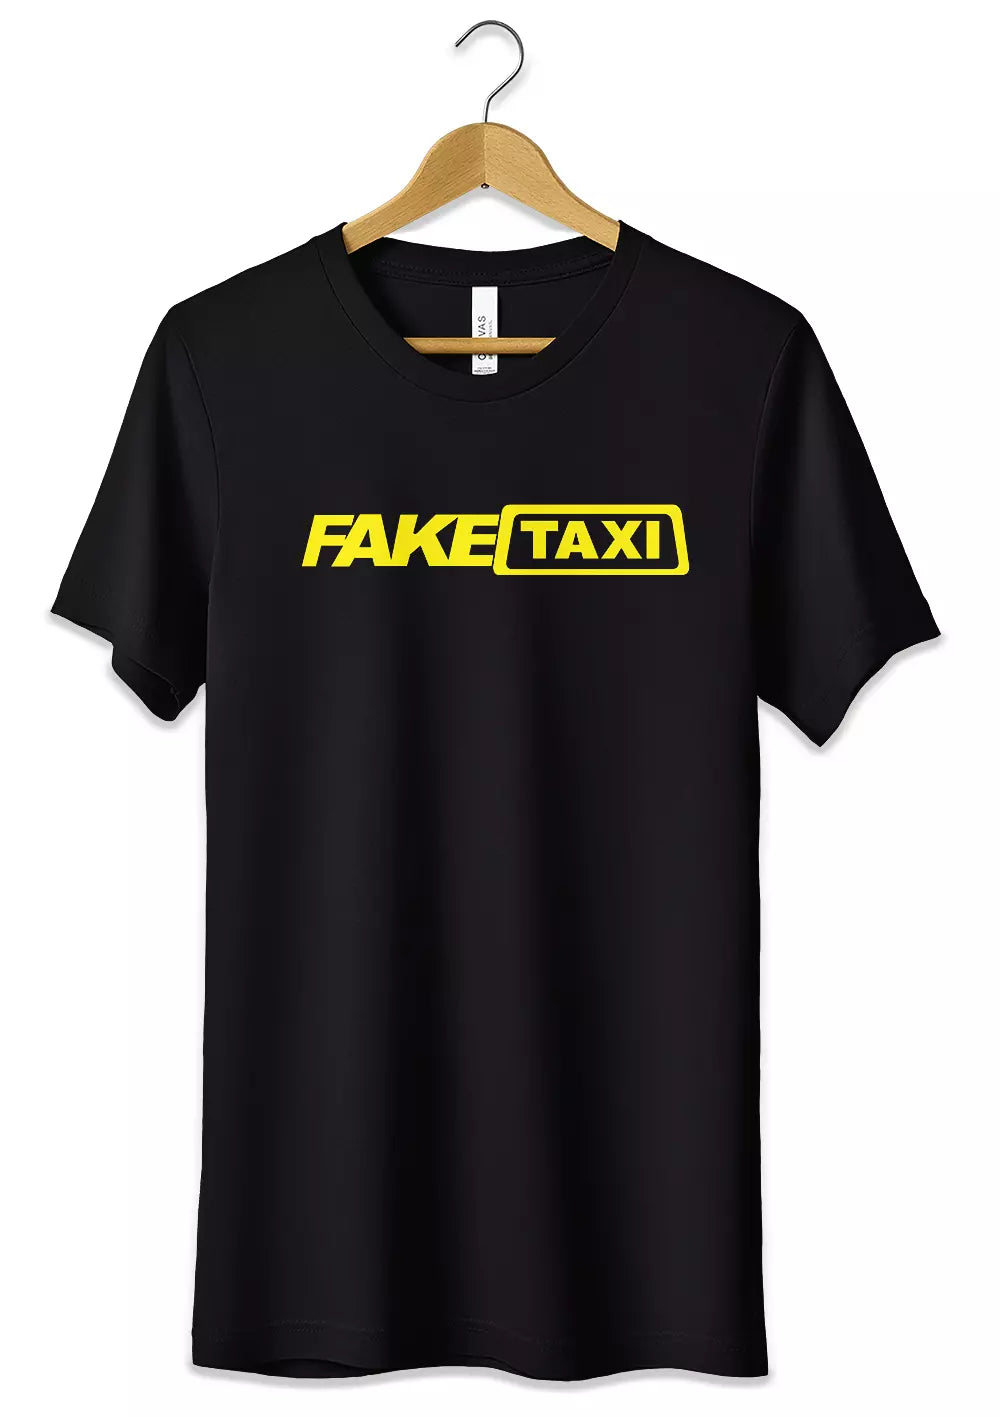 T-Shirt Funny Fake Taxi Maglietta 100% Cotone Idea Regalo, CmrDesignStore, T-Shirt, t-shirt-funny-fake-taxi-stampa-fluo-maglietta-100-cotone-idea-regalo, CmrDesignStore